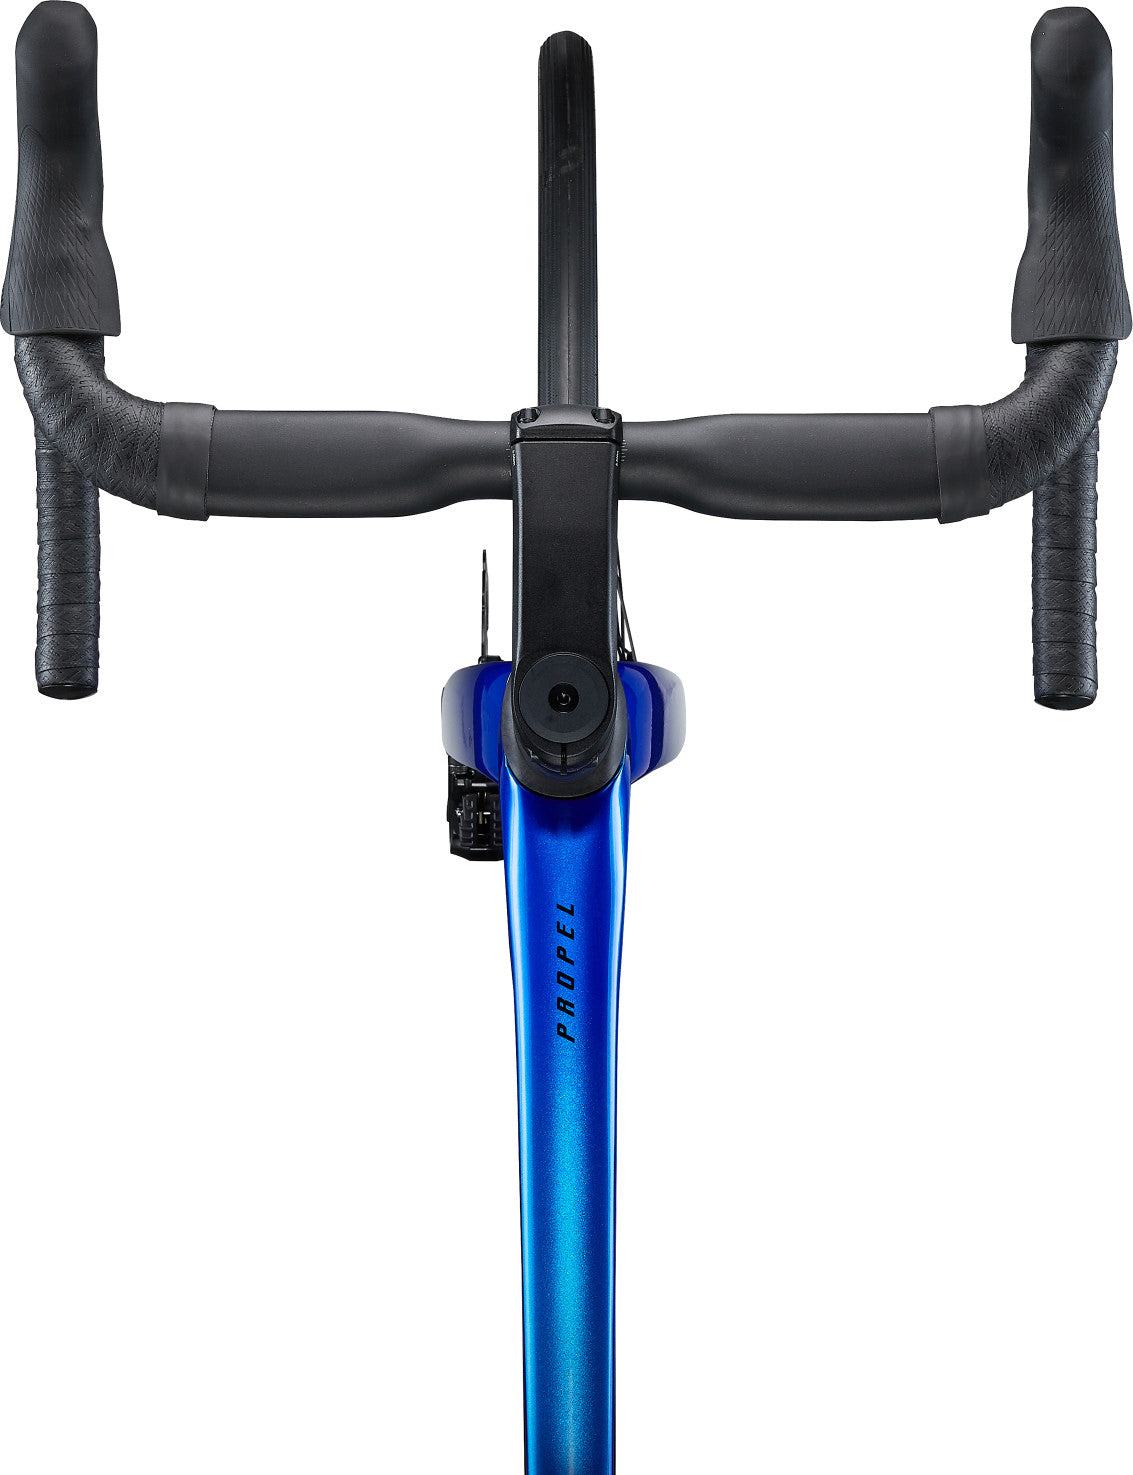 Bicicleta Ruta Propel Advanced 2 Disc Azul